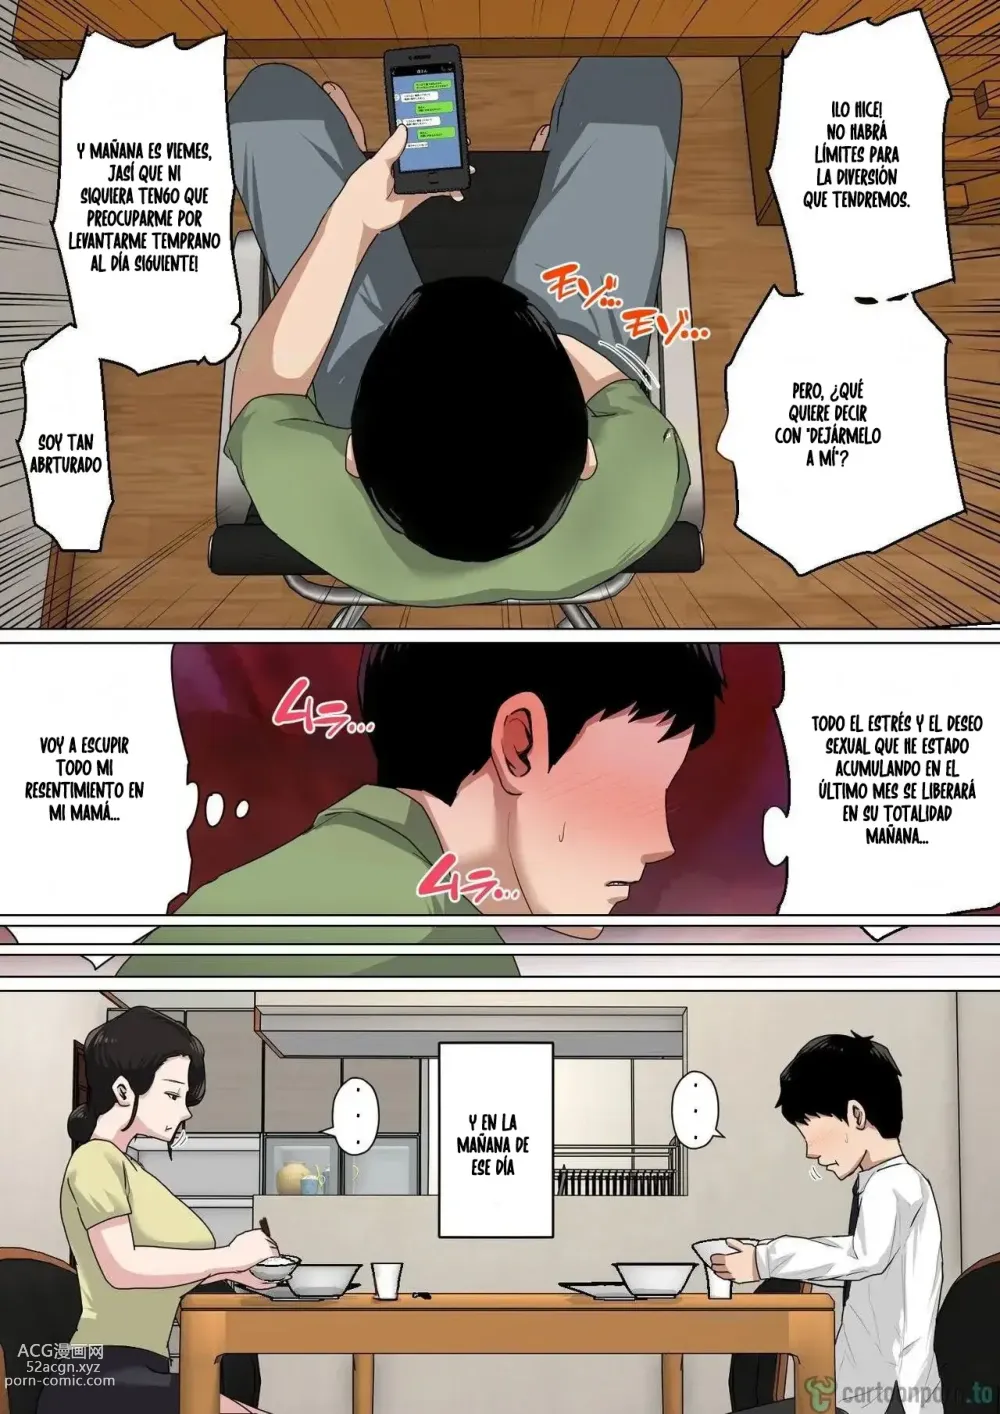 Page 18 of doujinshi Lidiando con el deseo sexual como madre todos los dias